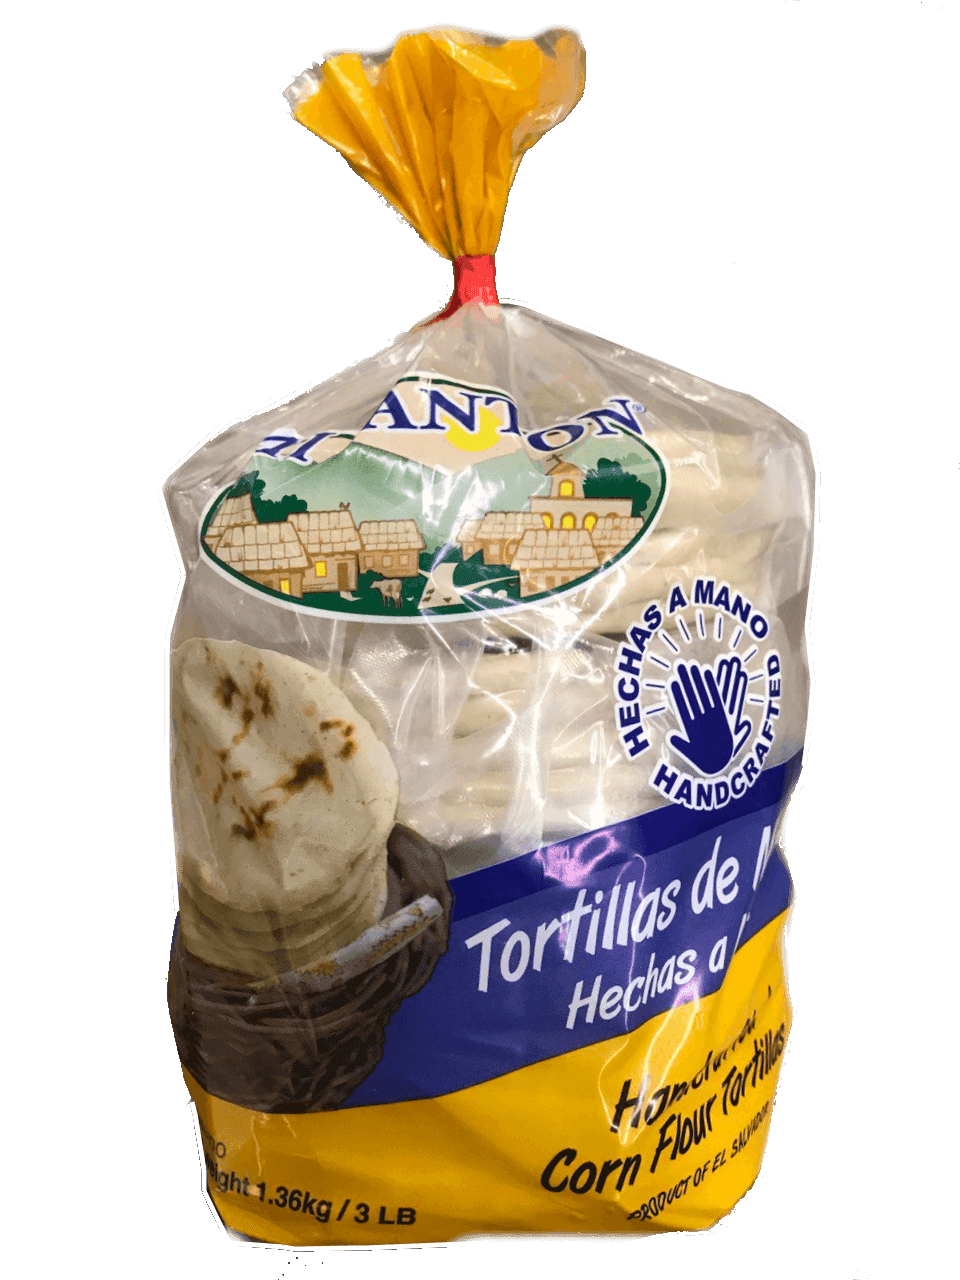 Mi Canton - Frozen Corn Flour Tortilla 3Lb